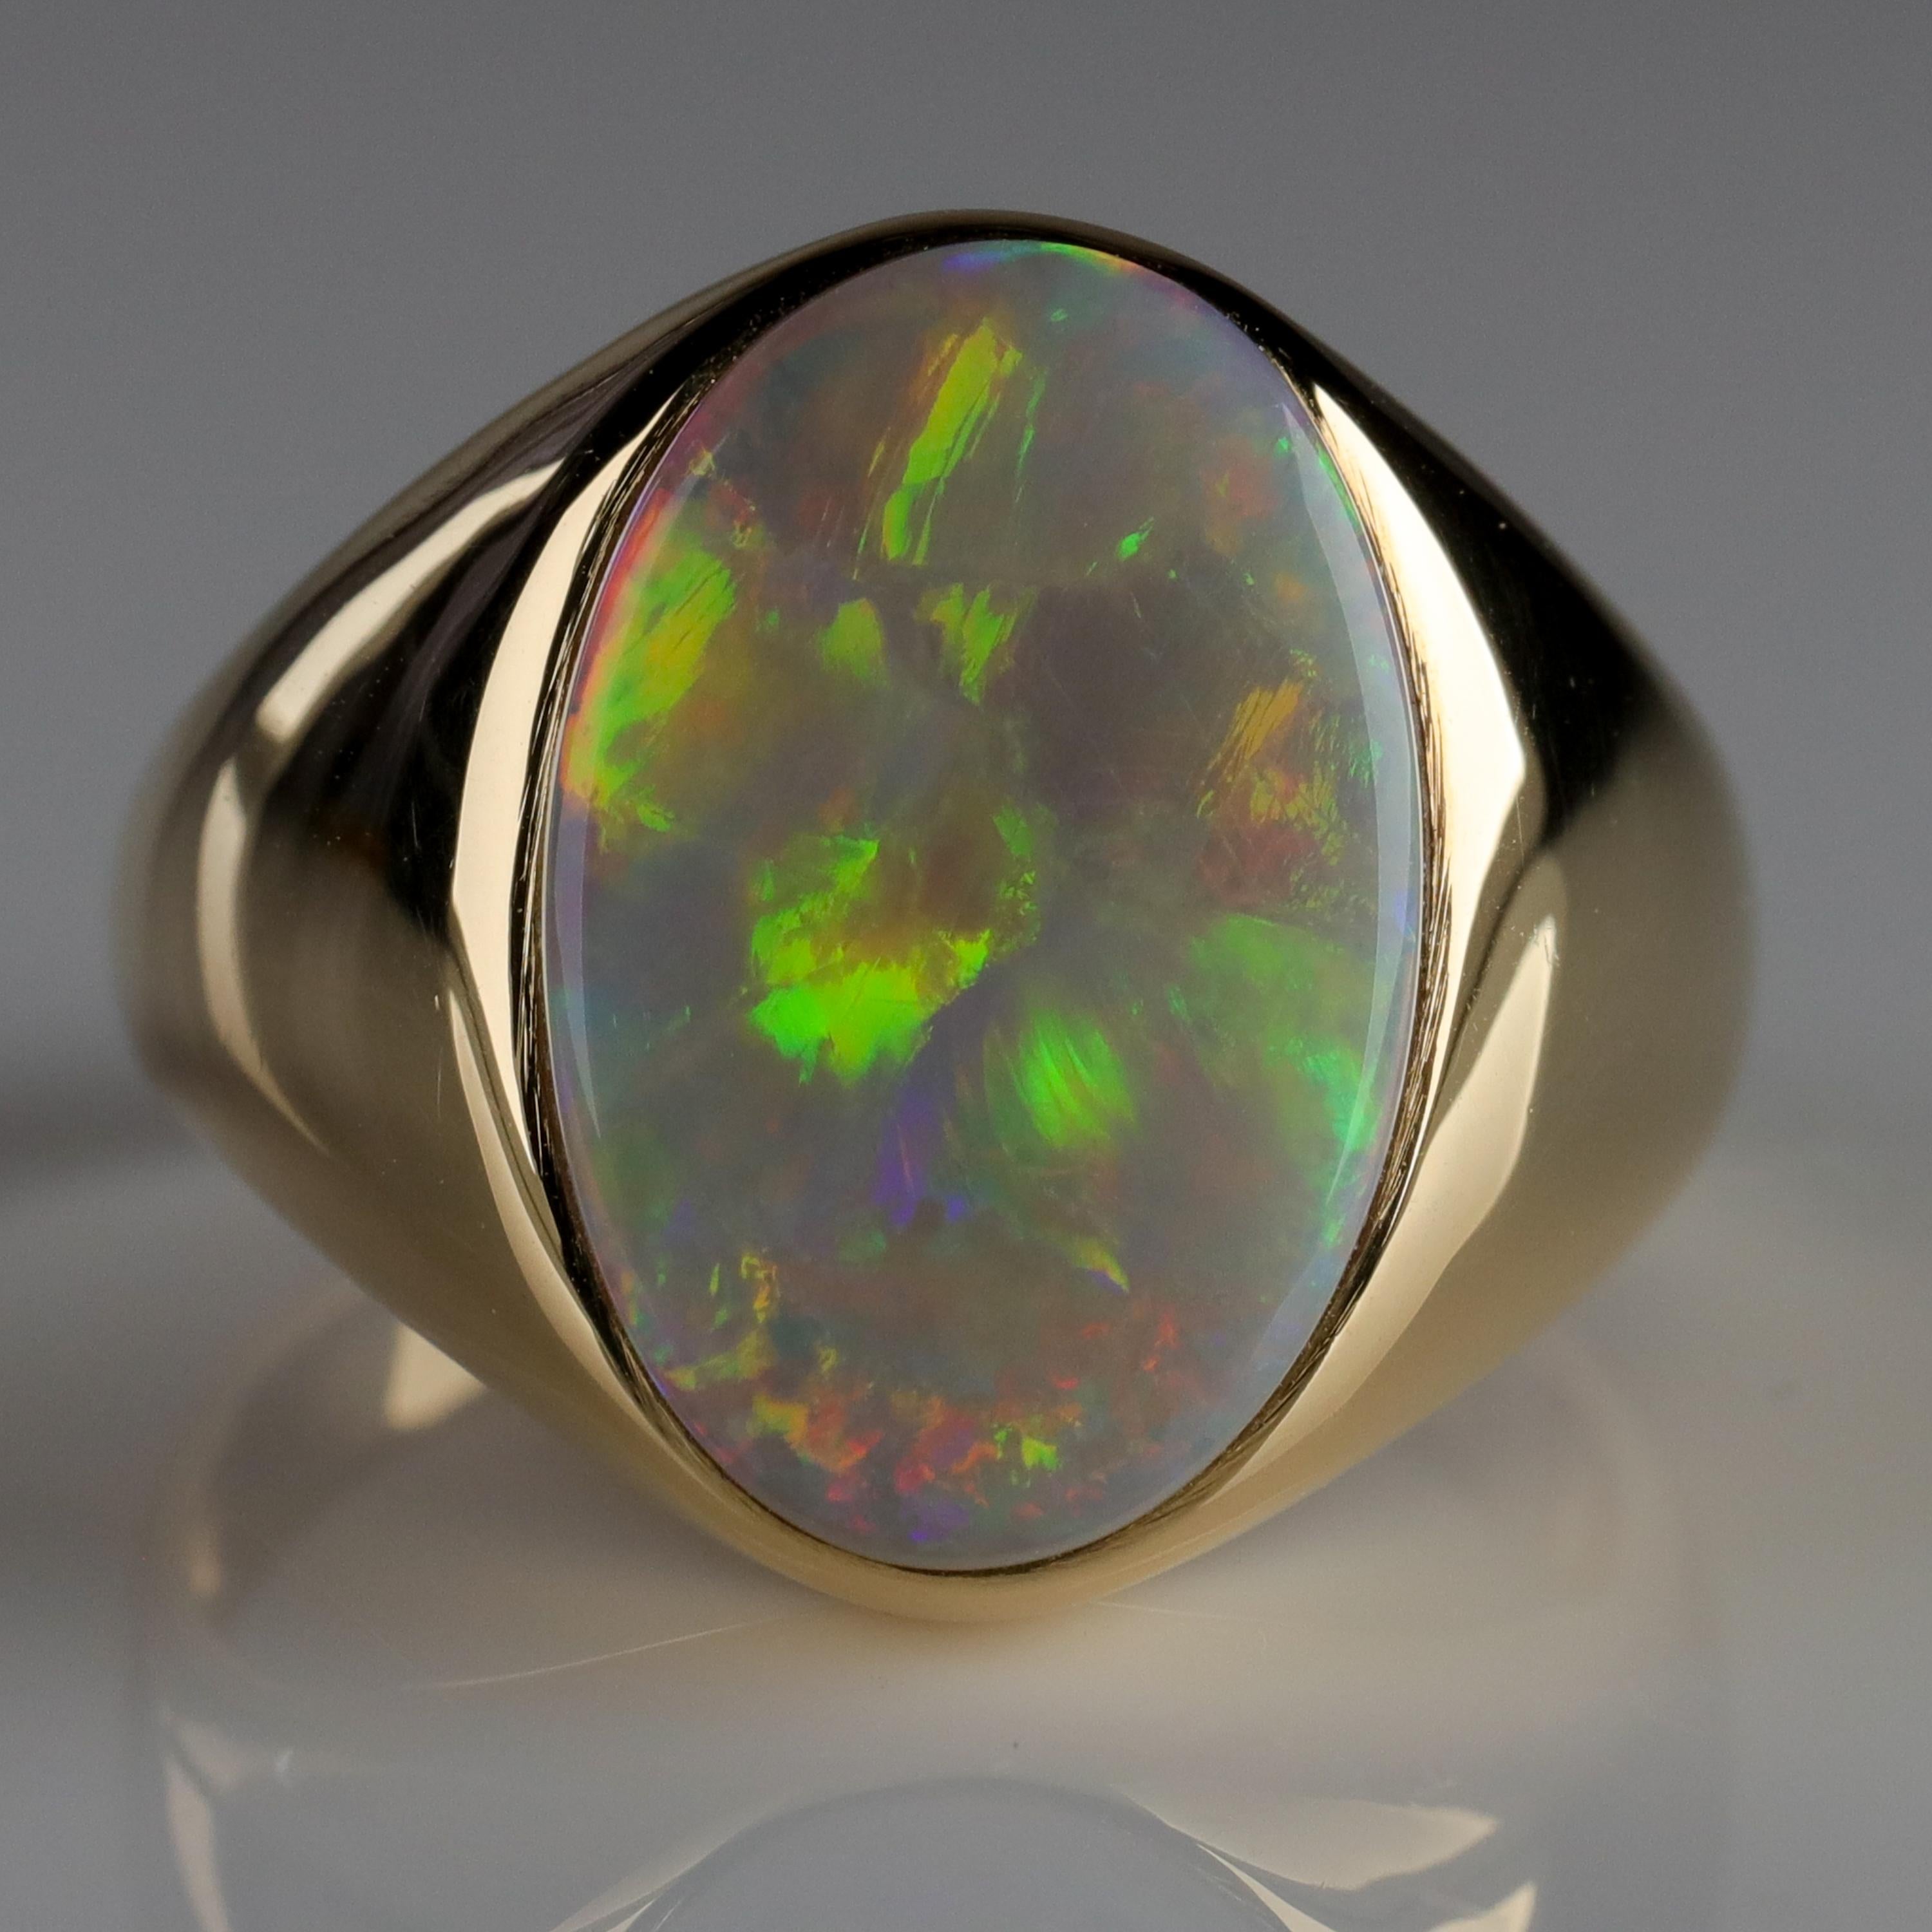 Men's Australian White Opal Ring with Full Spectrum Broad Flash 3